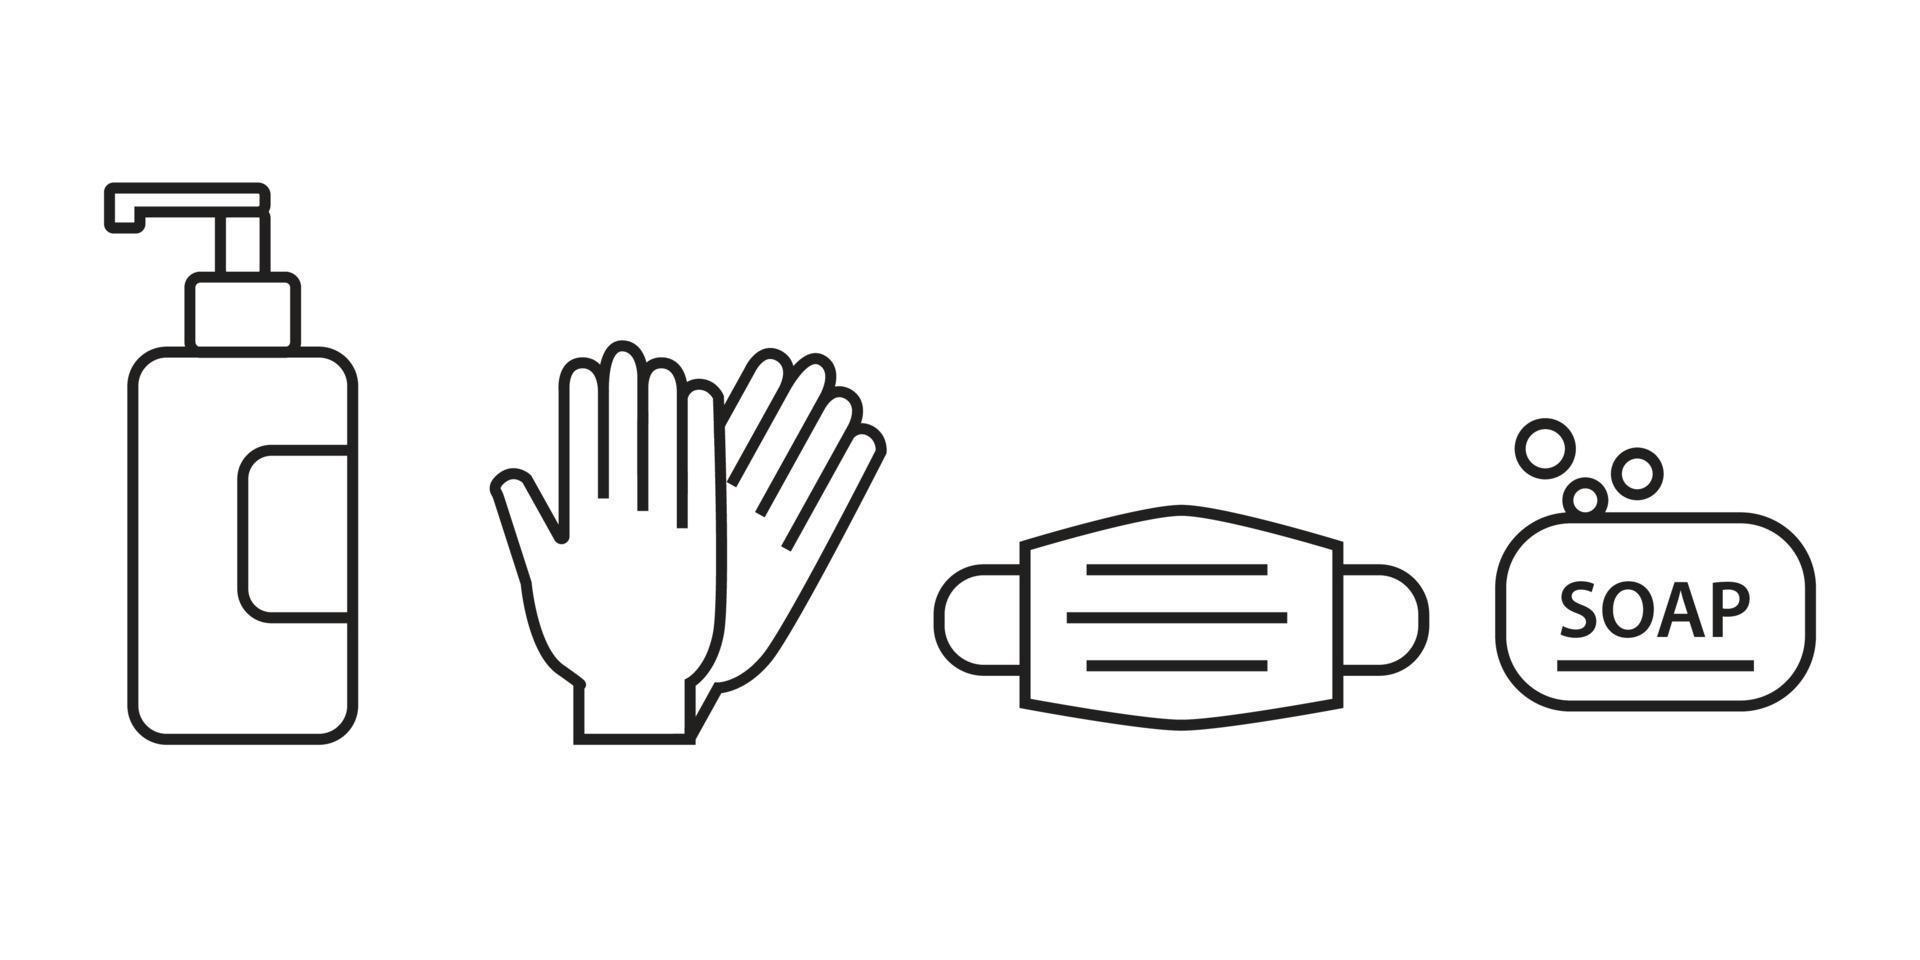 Symbole für persönliche Schutzausrüstung - medizinische Maske, Latexhandschuhe, Seife. coronavirus, covid 19 präventionsartikel. Linie, Umrisssymbole. Vektor-Illustration vektor